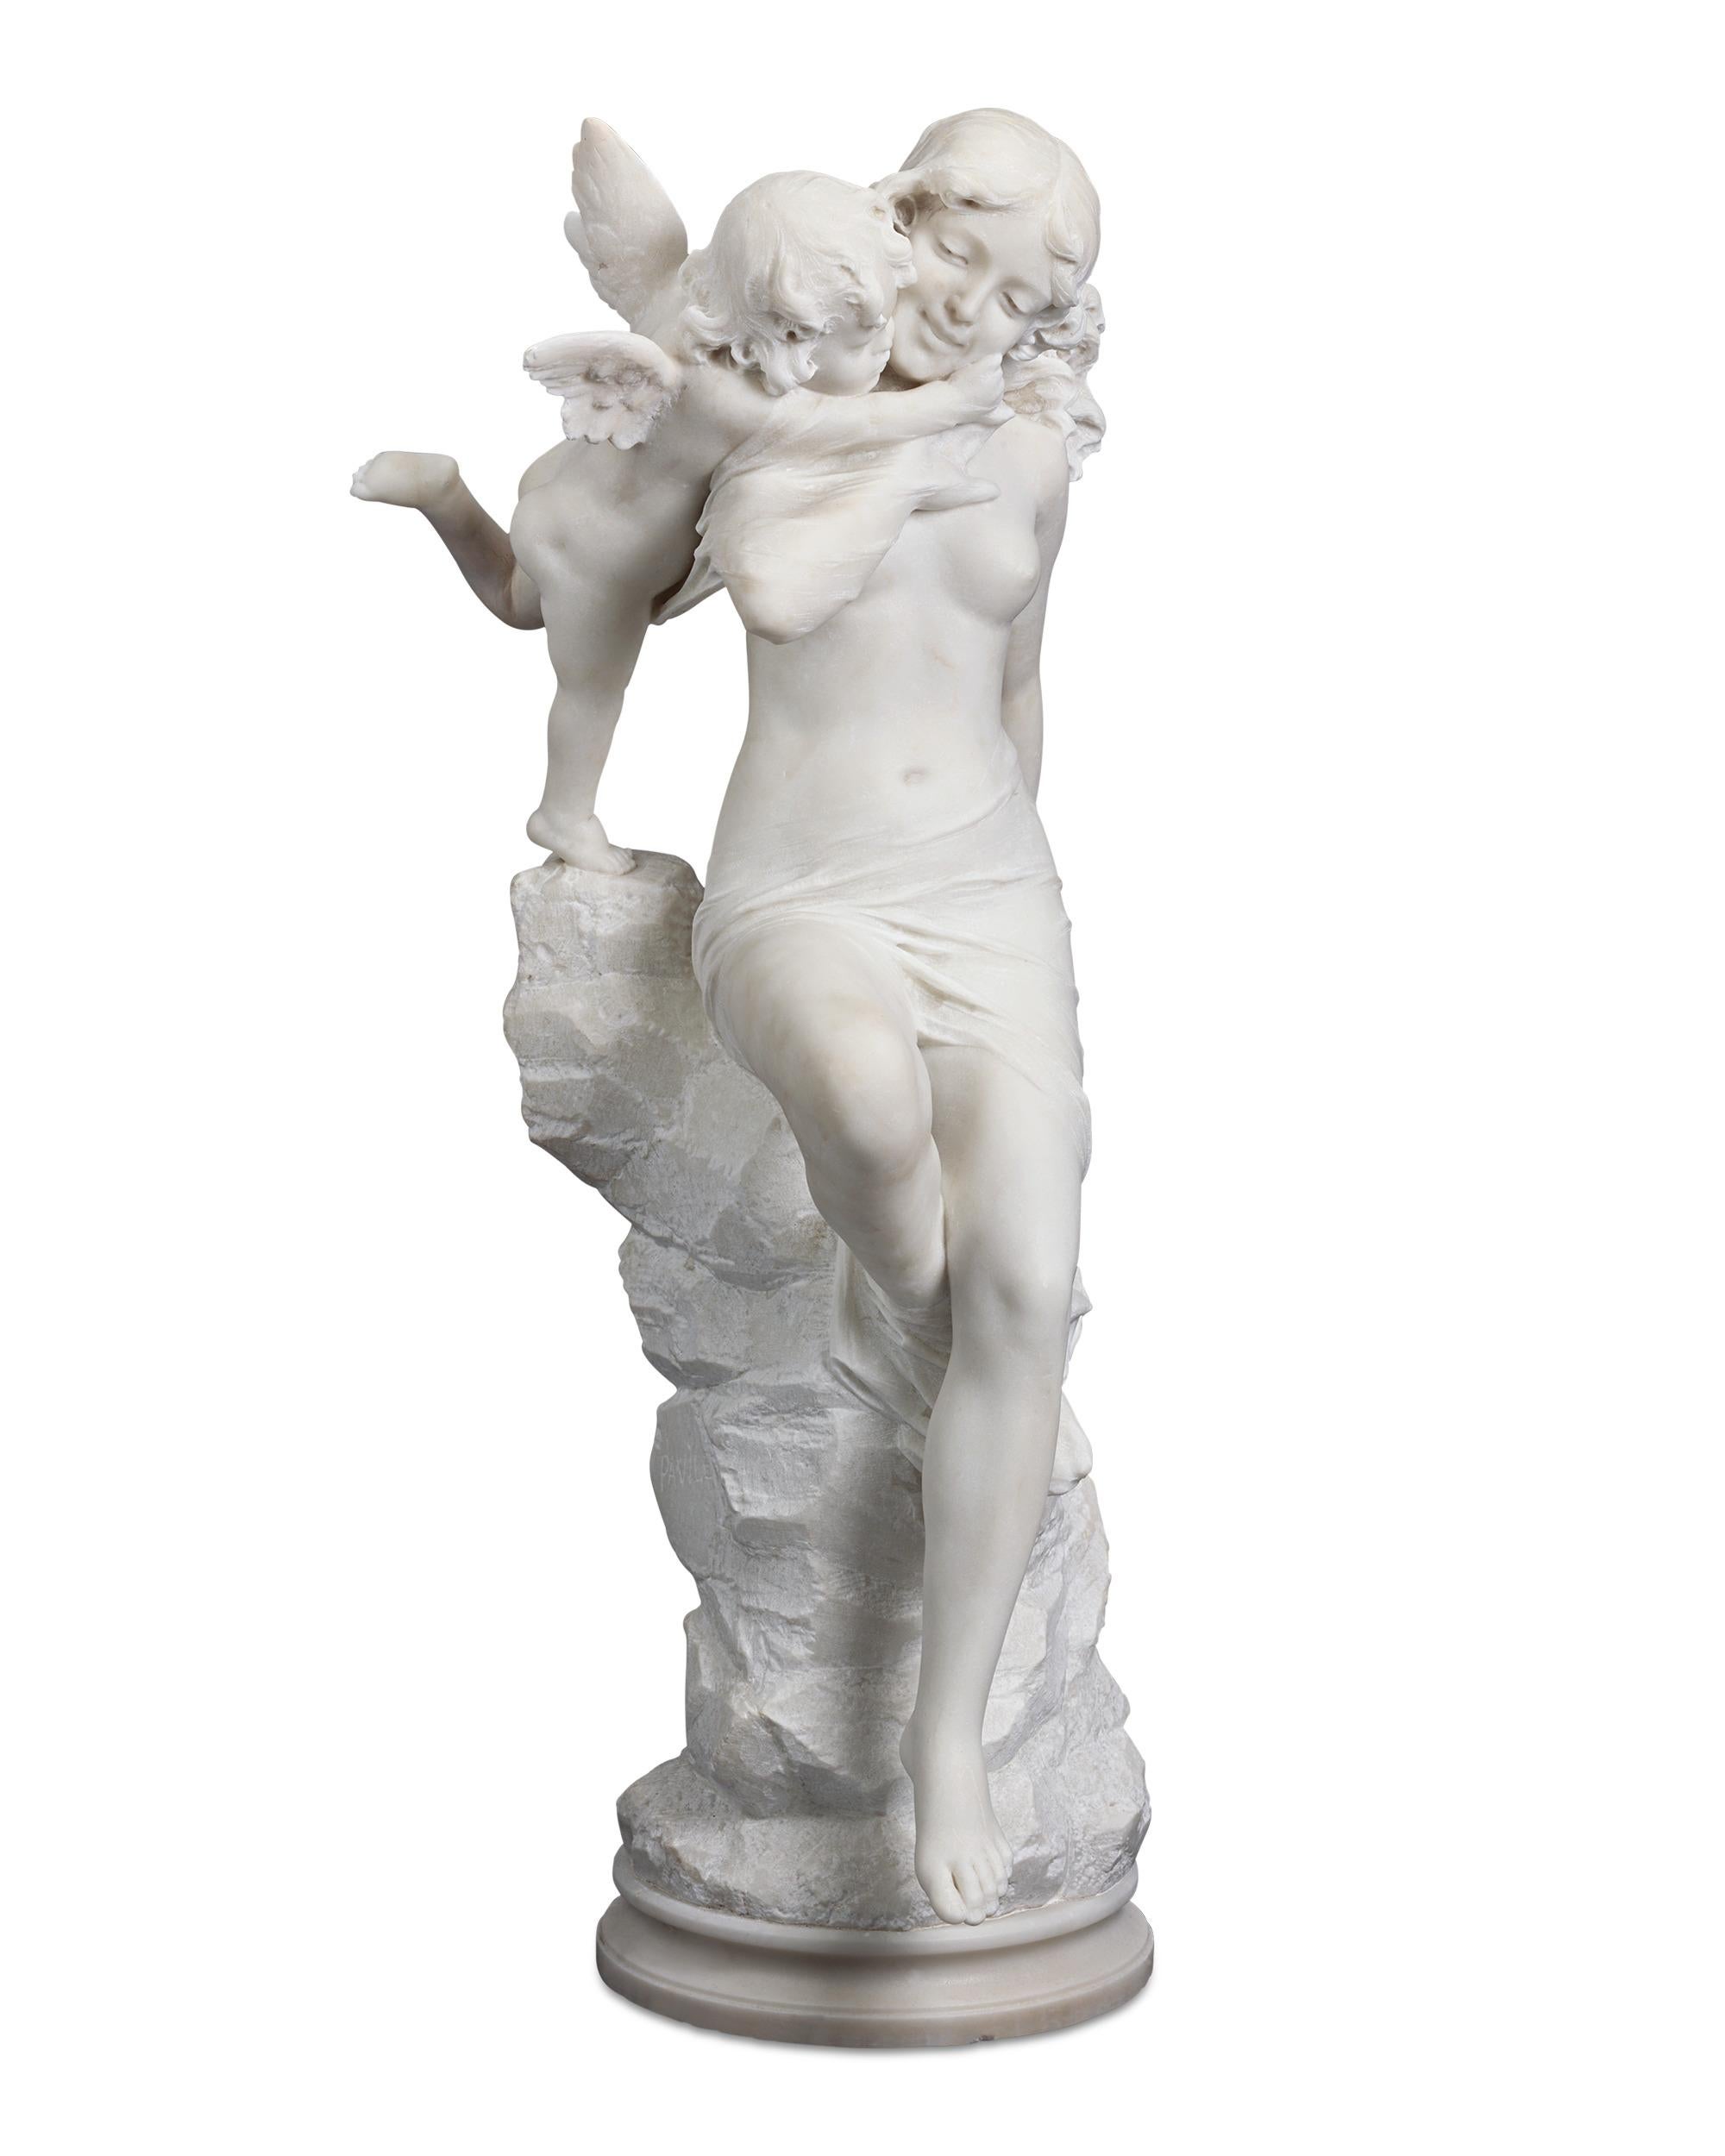 Magnifiquement détaillés et réalistes, Vénus et Cupidon partagent une douce étreinte dans cette remarquable sculpture italienne en marbre blanc. La beauté féminine s'appuie gracieusement sur une rocaille rugueuse qui contraste magistralement avec la